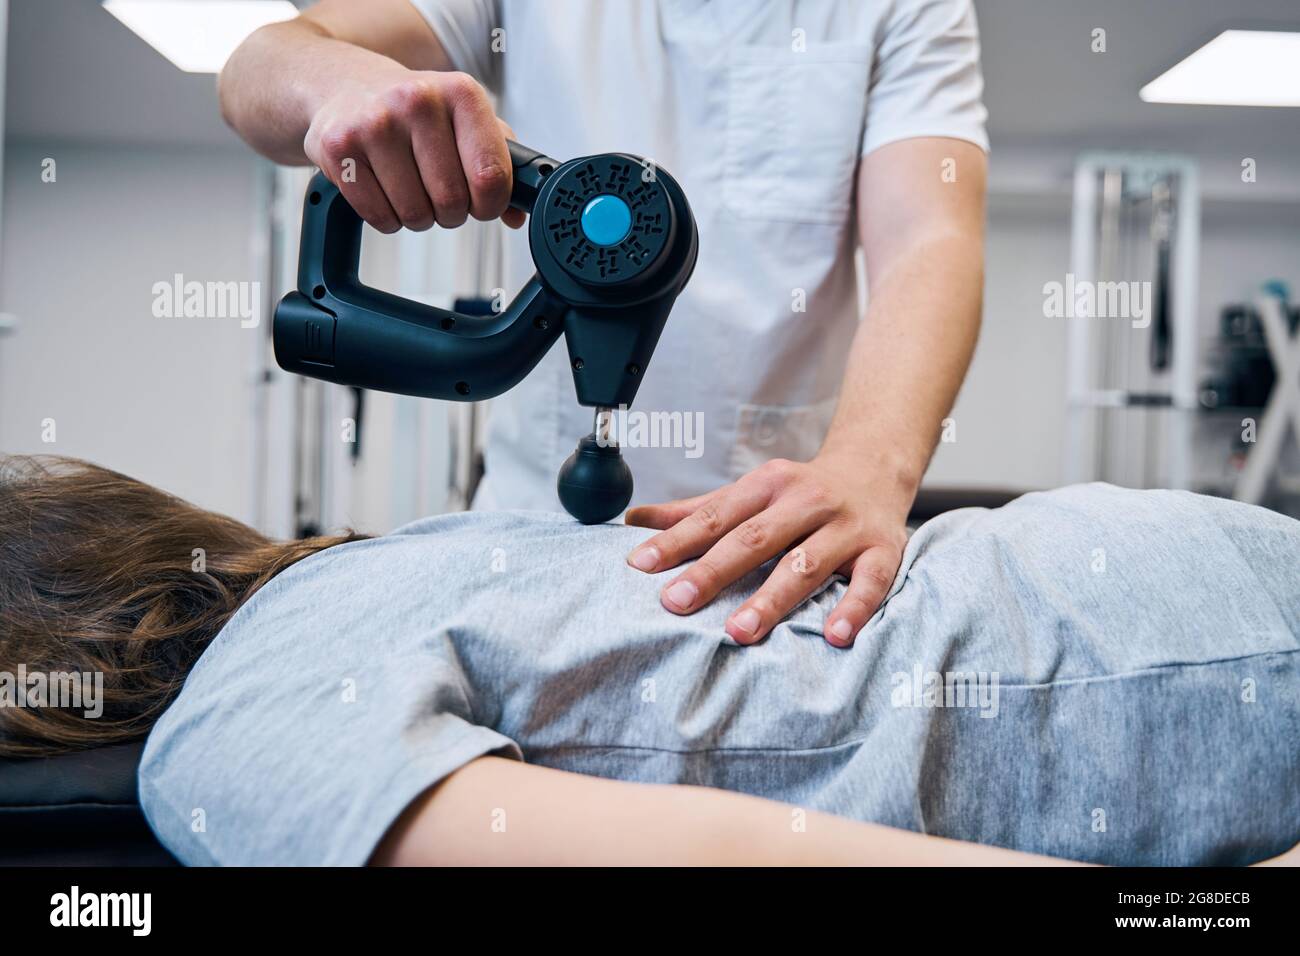 Masseur mit Massagegerät Perkussionspistole behandelt Mädchen Rücken und  Wirbelsäule während der Therapiestunde Stockfotografie - Alamy